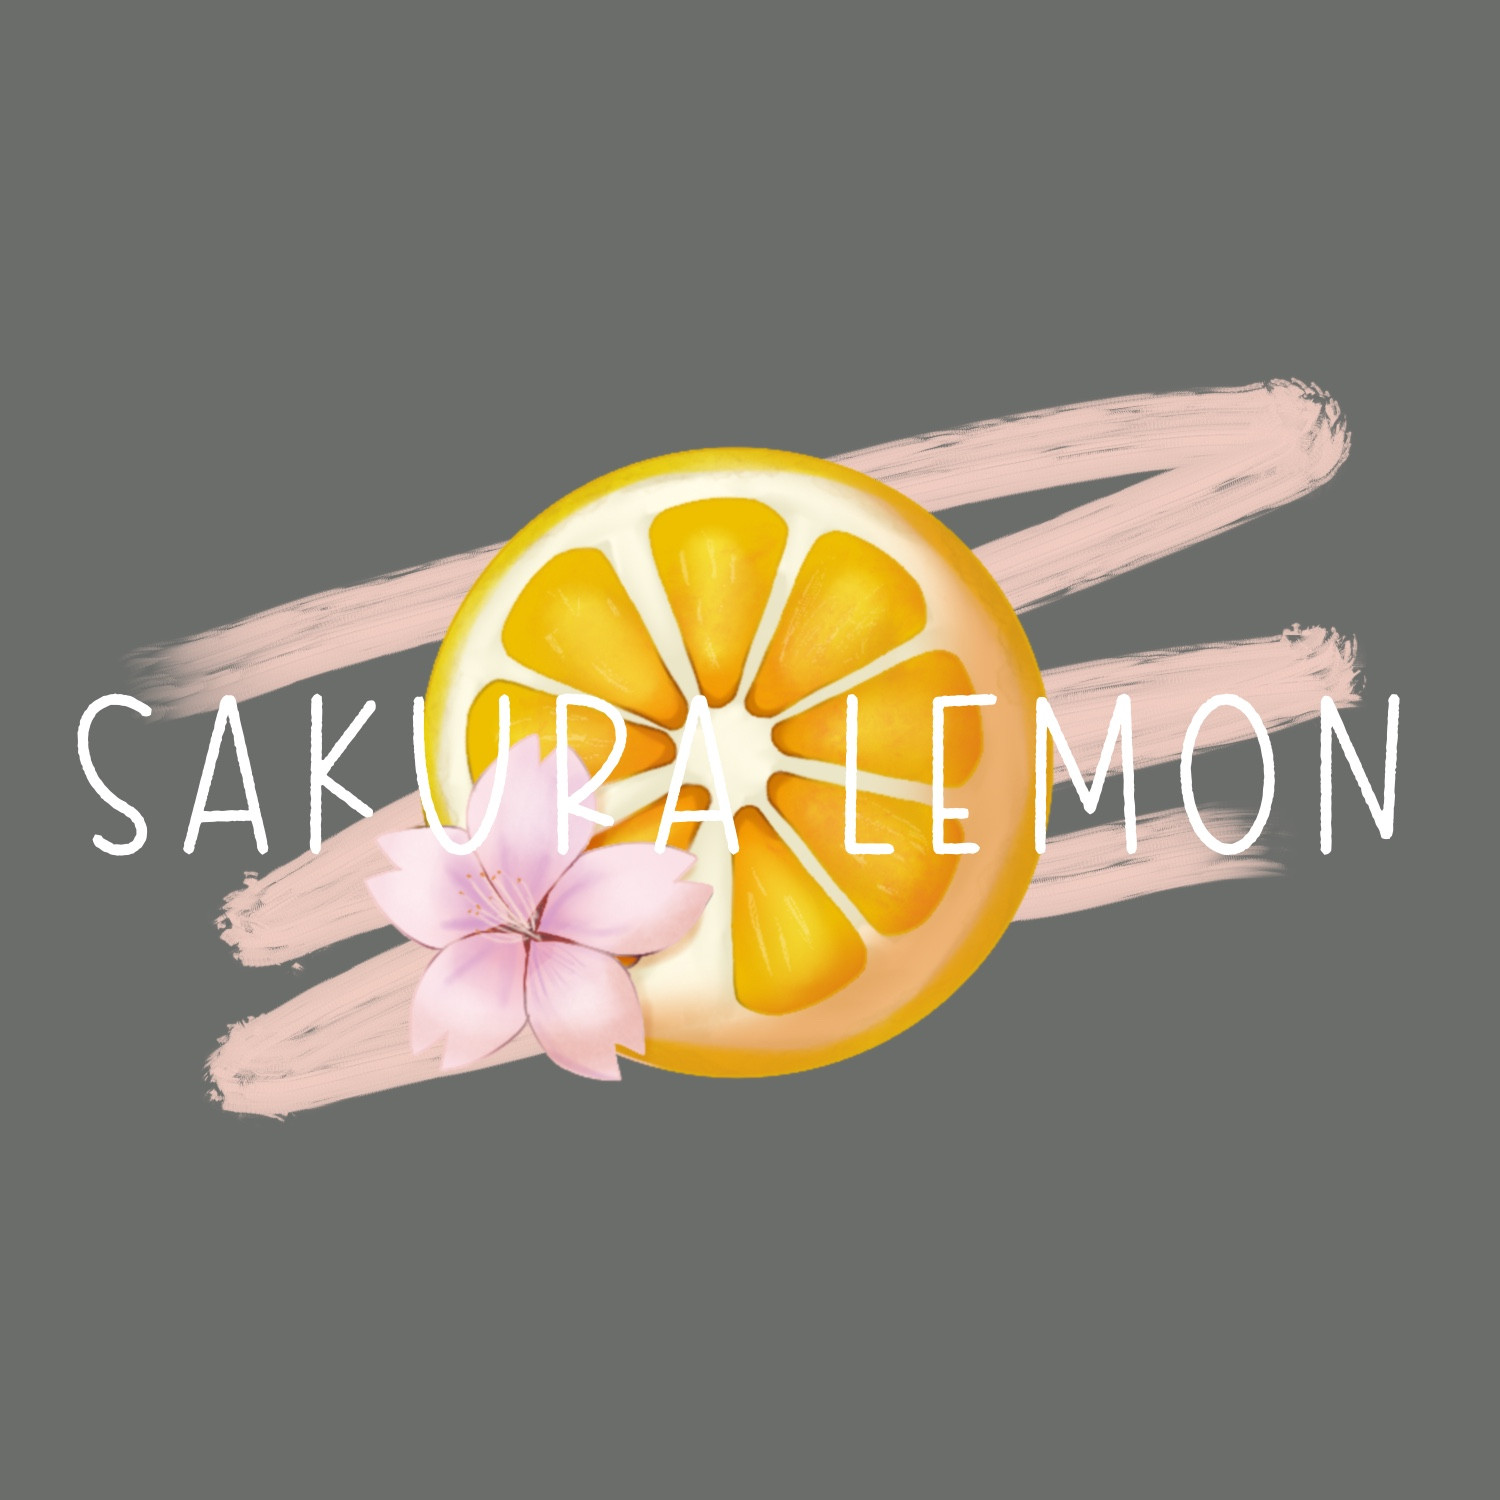 Sakura Lemon Designsimmagine del profilo di